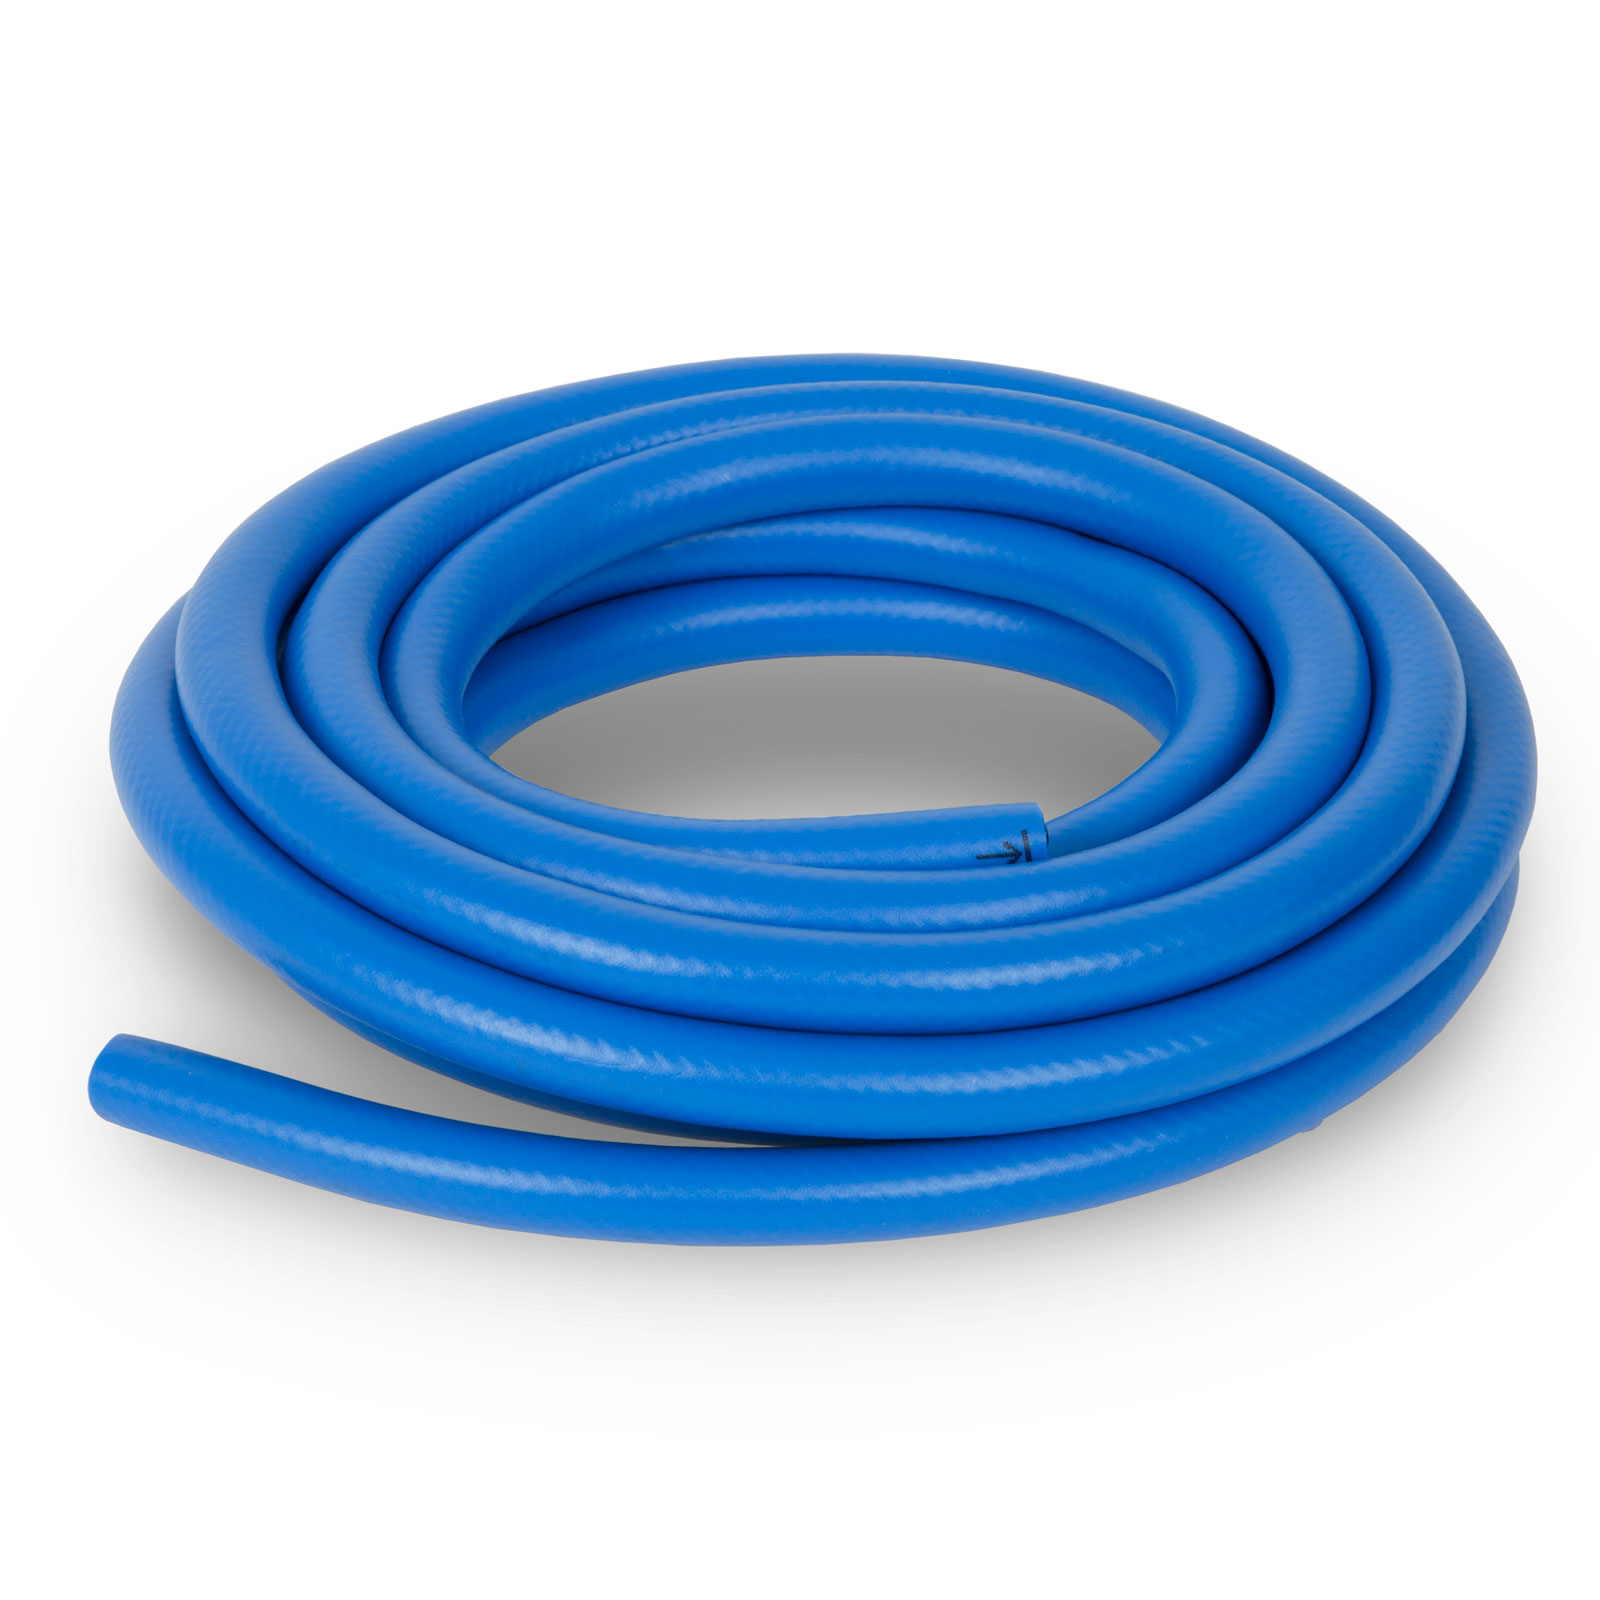 TEN-HIGH Tuyau air comprimé 6,5mm(DI) x 10mm(DE) polyuréthane avec Maille  de Polyester, 1,75mm d'épaisseur,longueur 5m,bleu